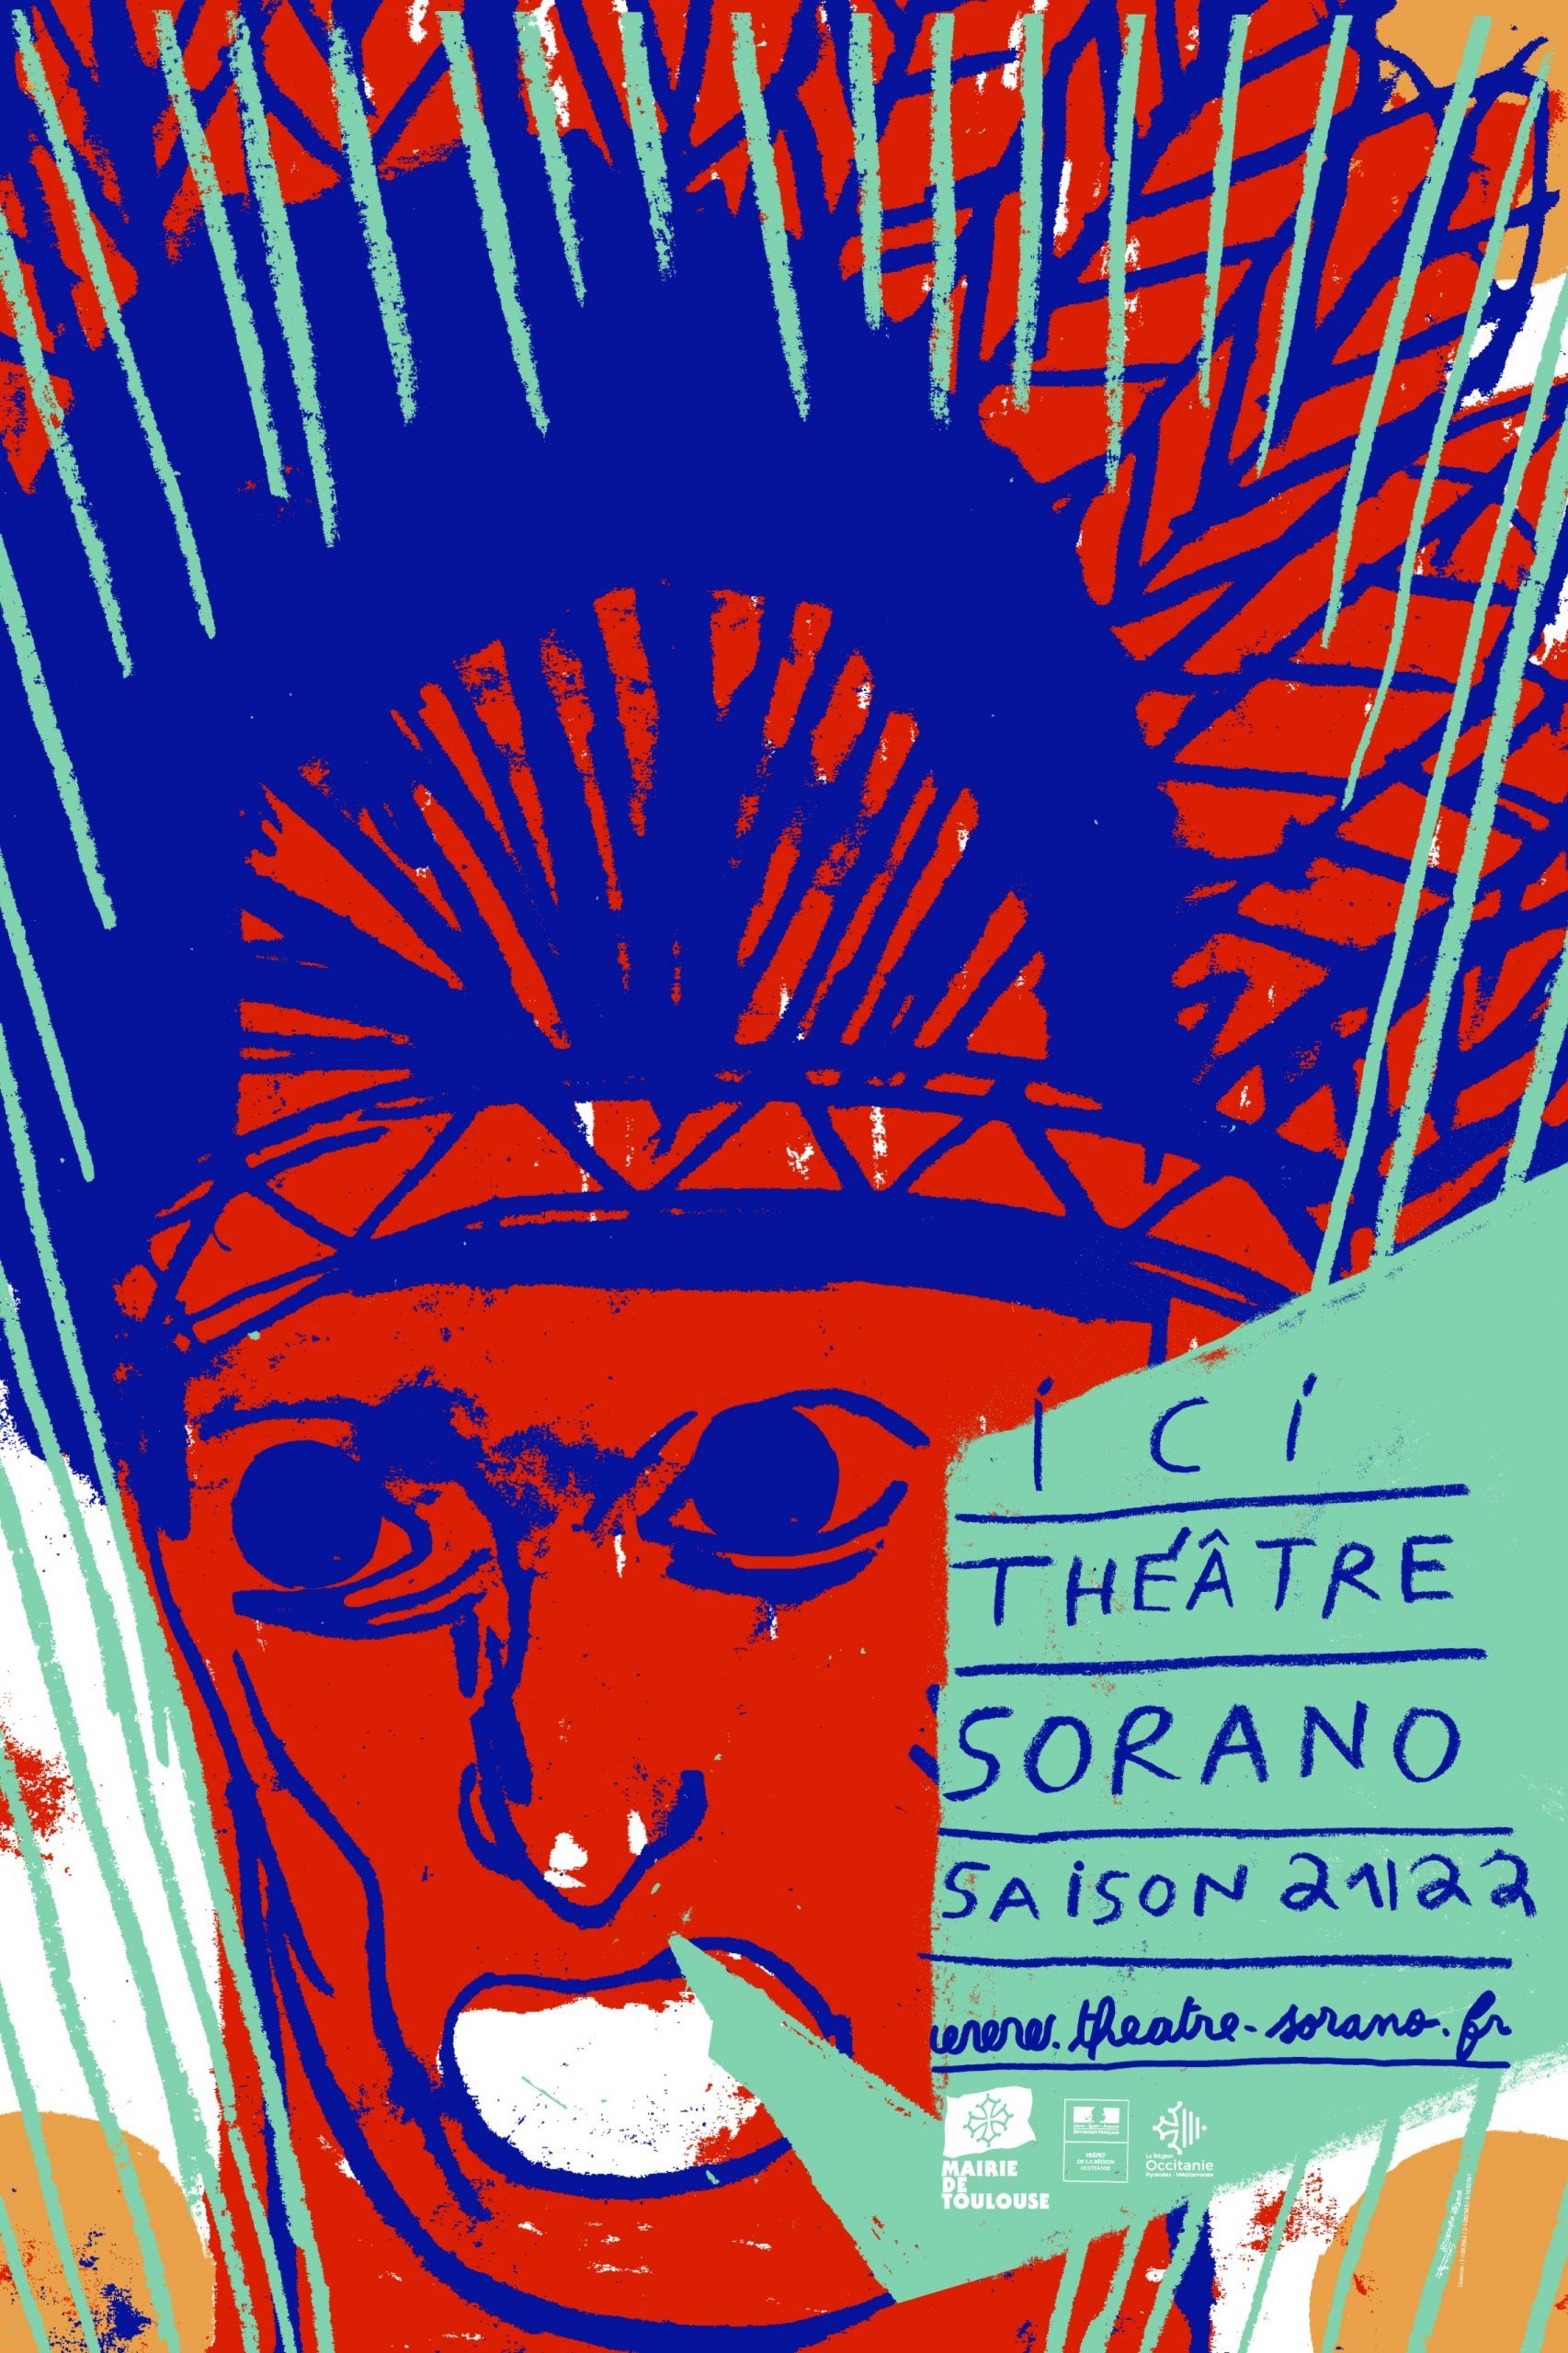 Théâtre Sorano - 2021/2022 b